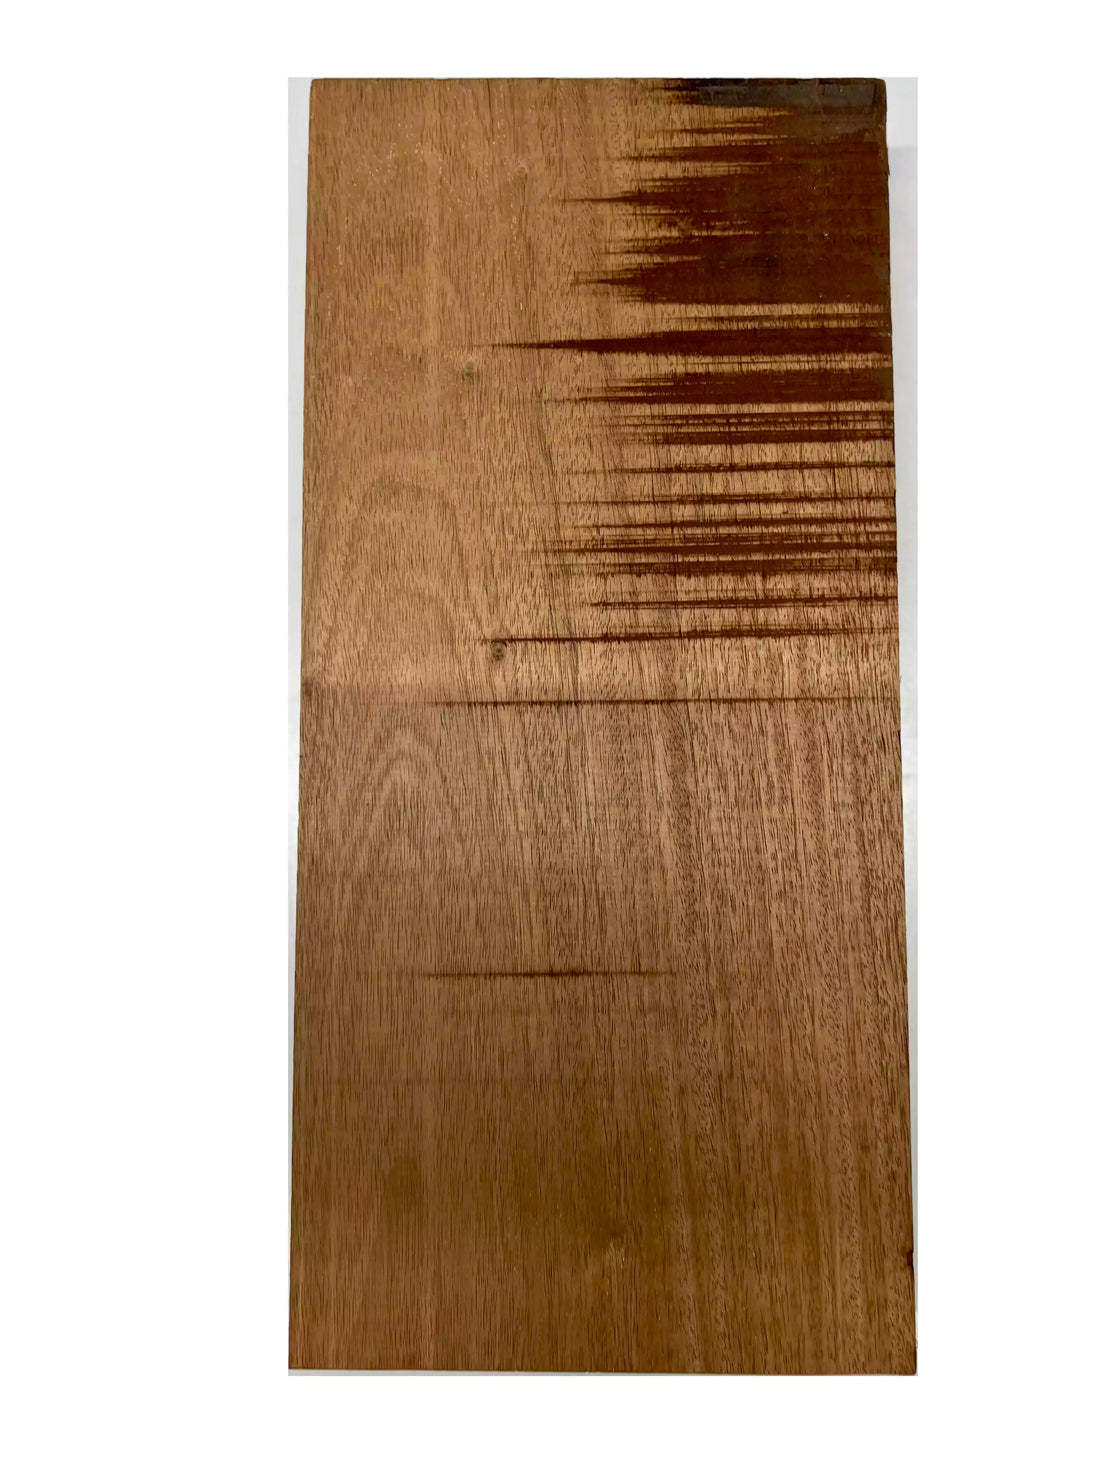 Honduran Mahogany Lumber Board Wood Blank 17&quot; x 8&quot; x 2&quot; 